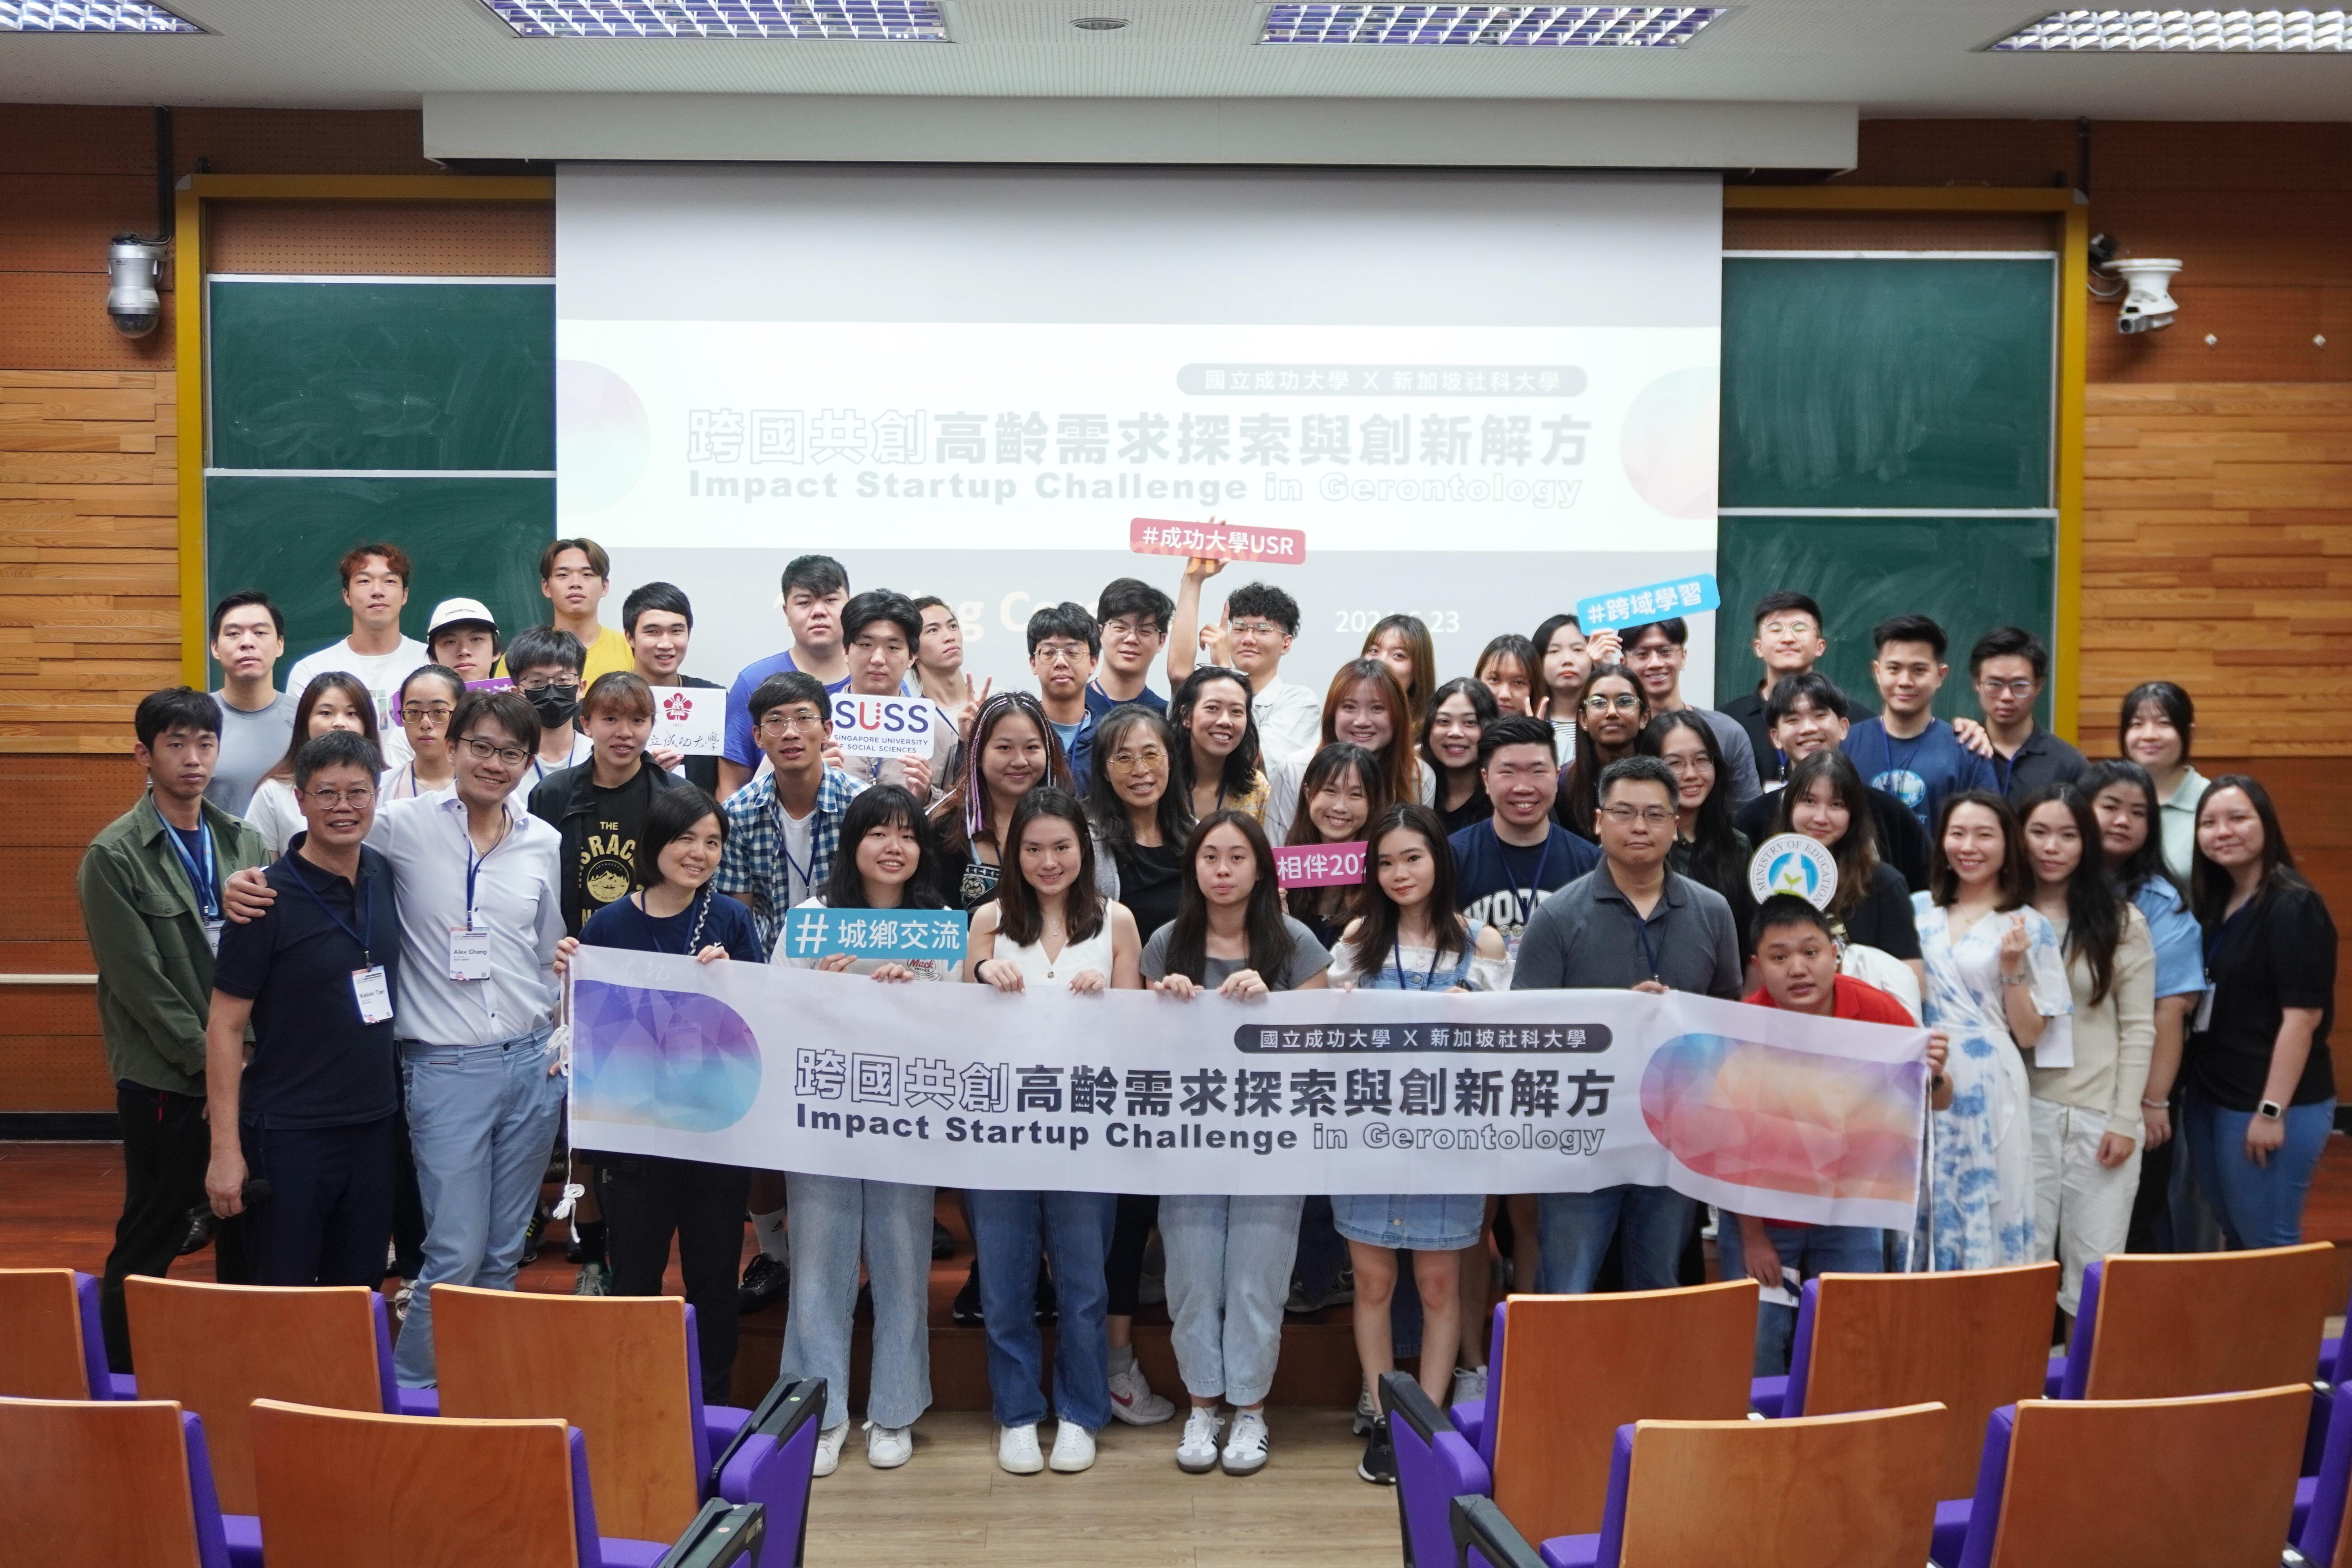 科技與人文的跨國暑期密集課程： 成功大學與新加坡社科大學攜手探索「銀髮創新」的跨域議題